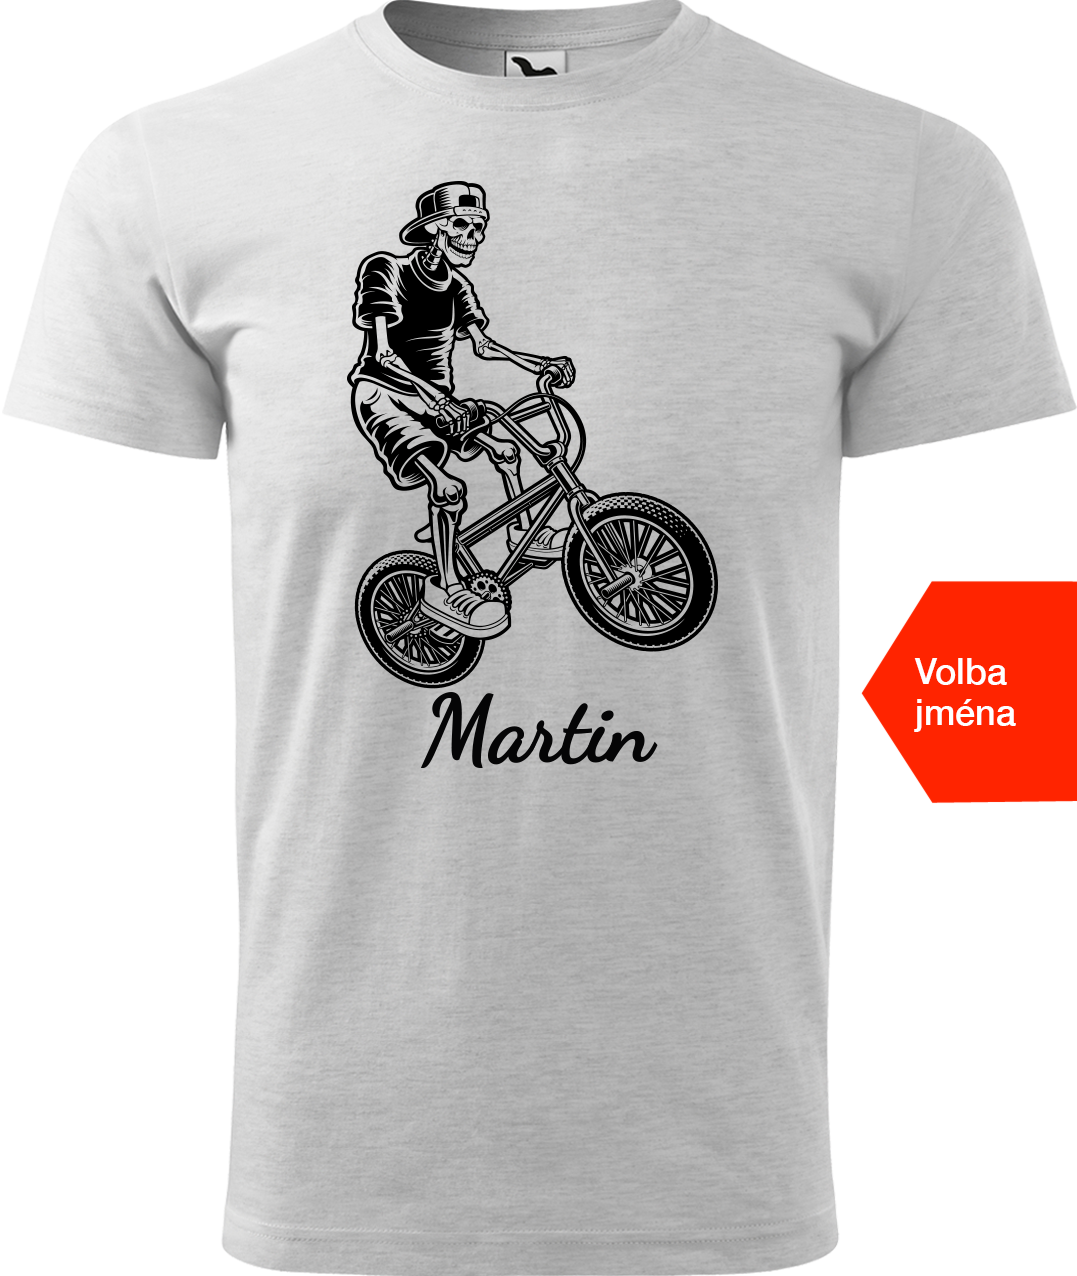 Pánské tričko s kolem a jménem - Trial Bike Velikost: L, Barva: Světle šedý melír (03)